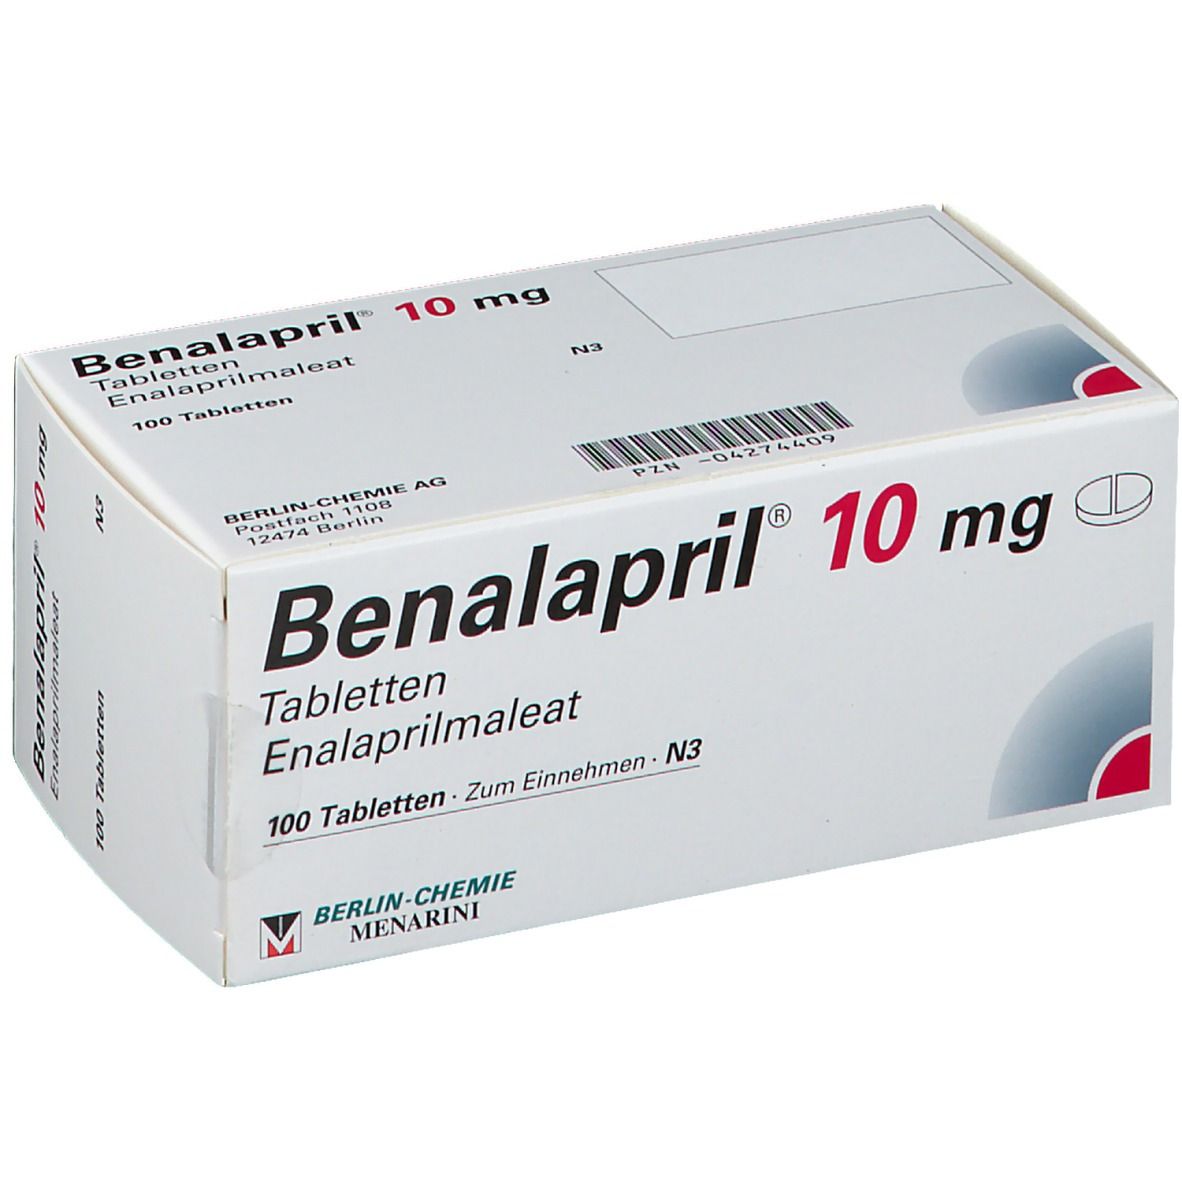 Benalapril® 10 mg